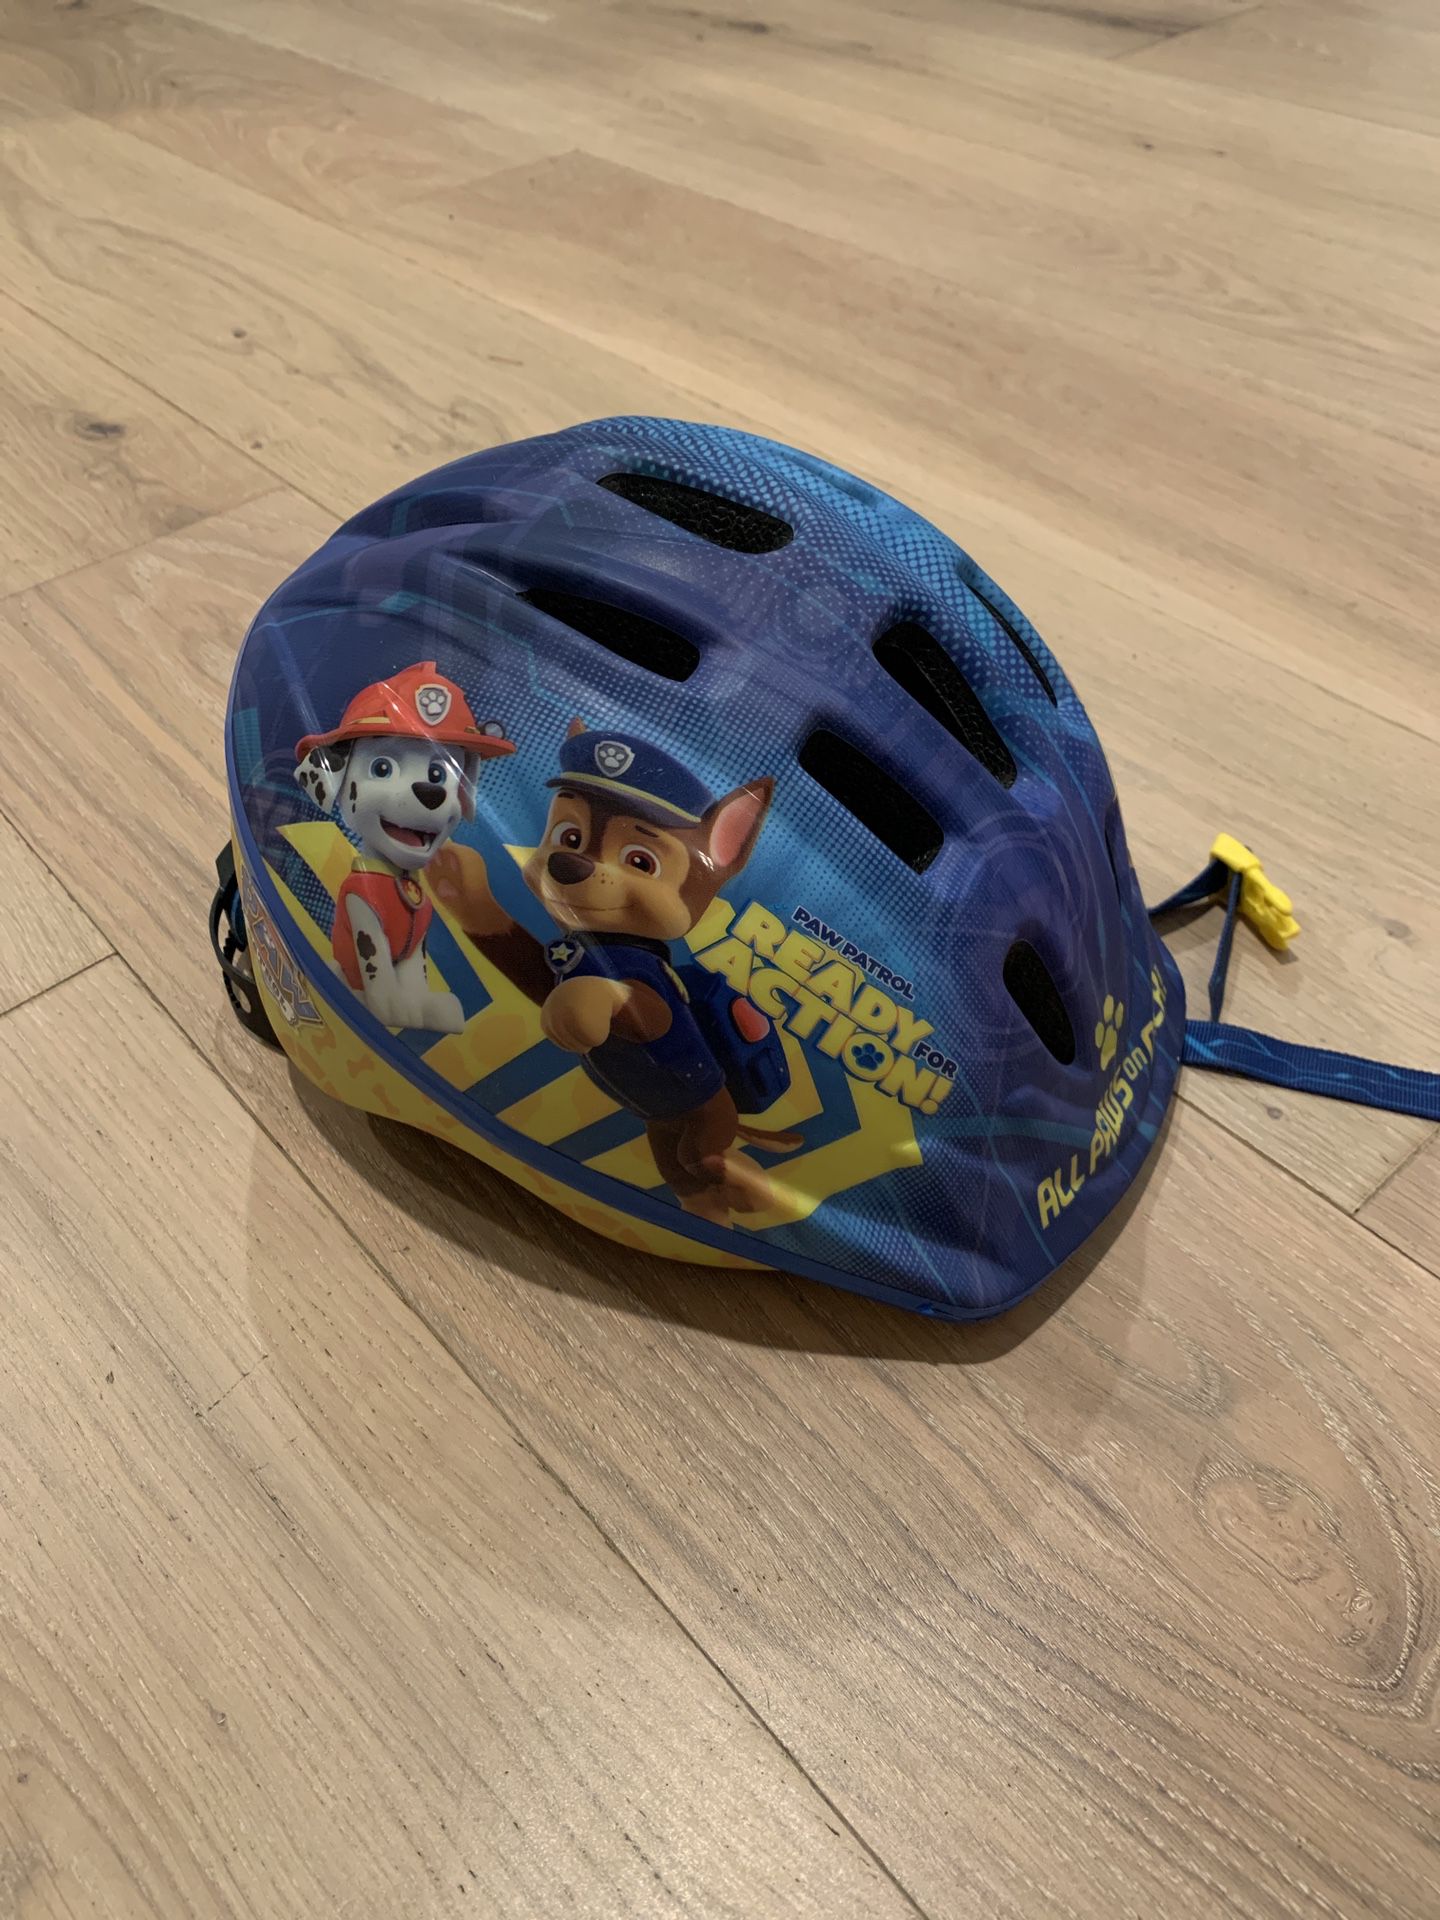 Helmet For Kids 3-5 Years 